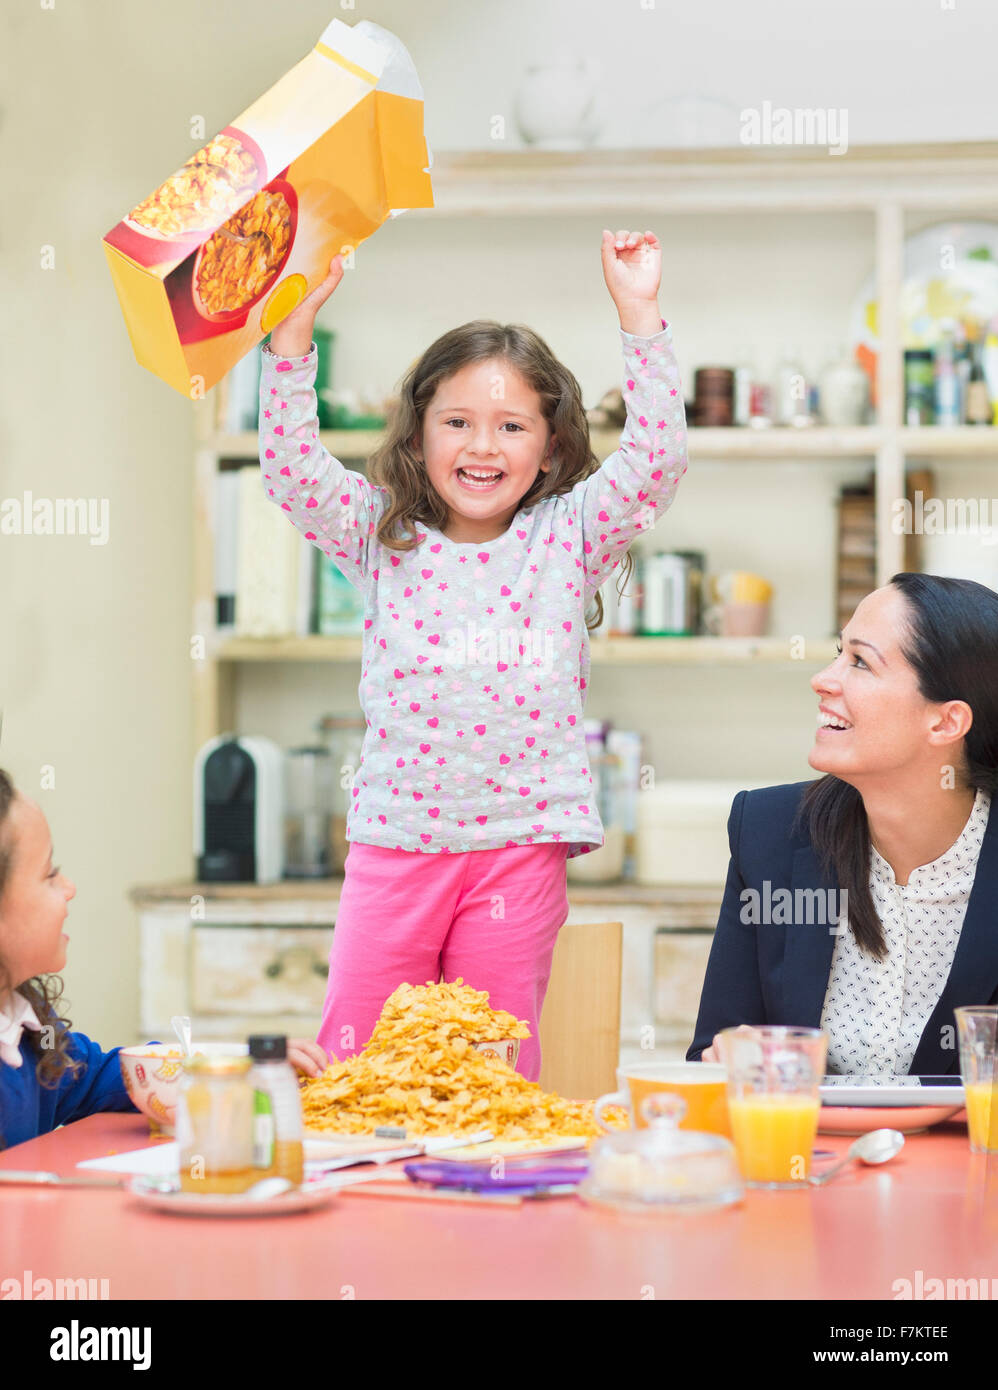 Ritratto ragazza entusiastica acclamare con scatola di cereali al tavolo per la colazione Foto Stock